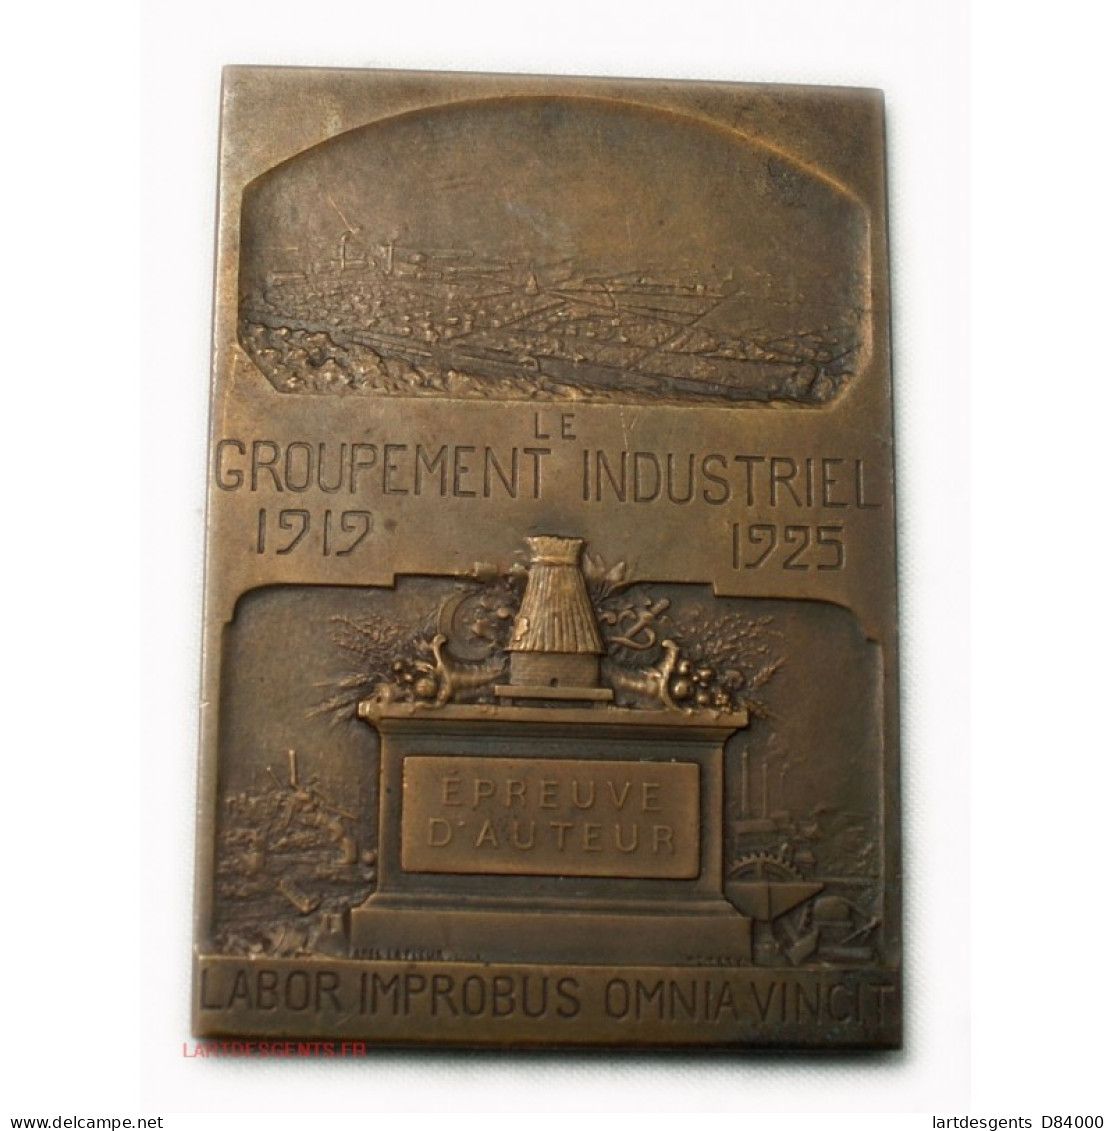 RARE Médaille Plaque Louis SEBLINE Fondateur Cité Montescourt 1919-25 - Royal / Of Nobility